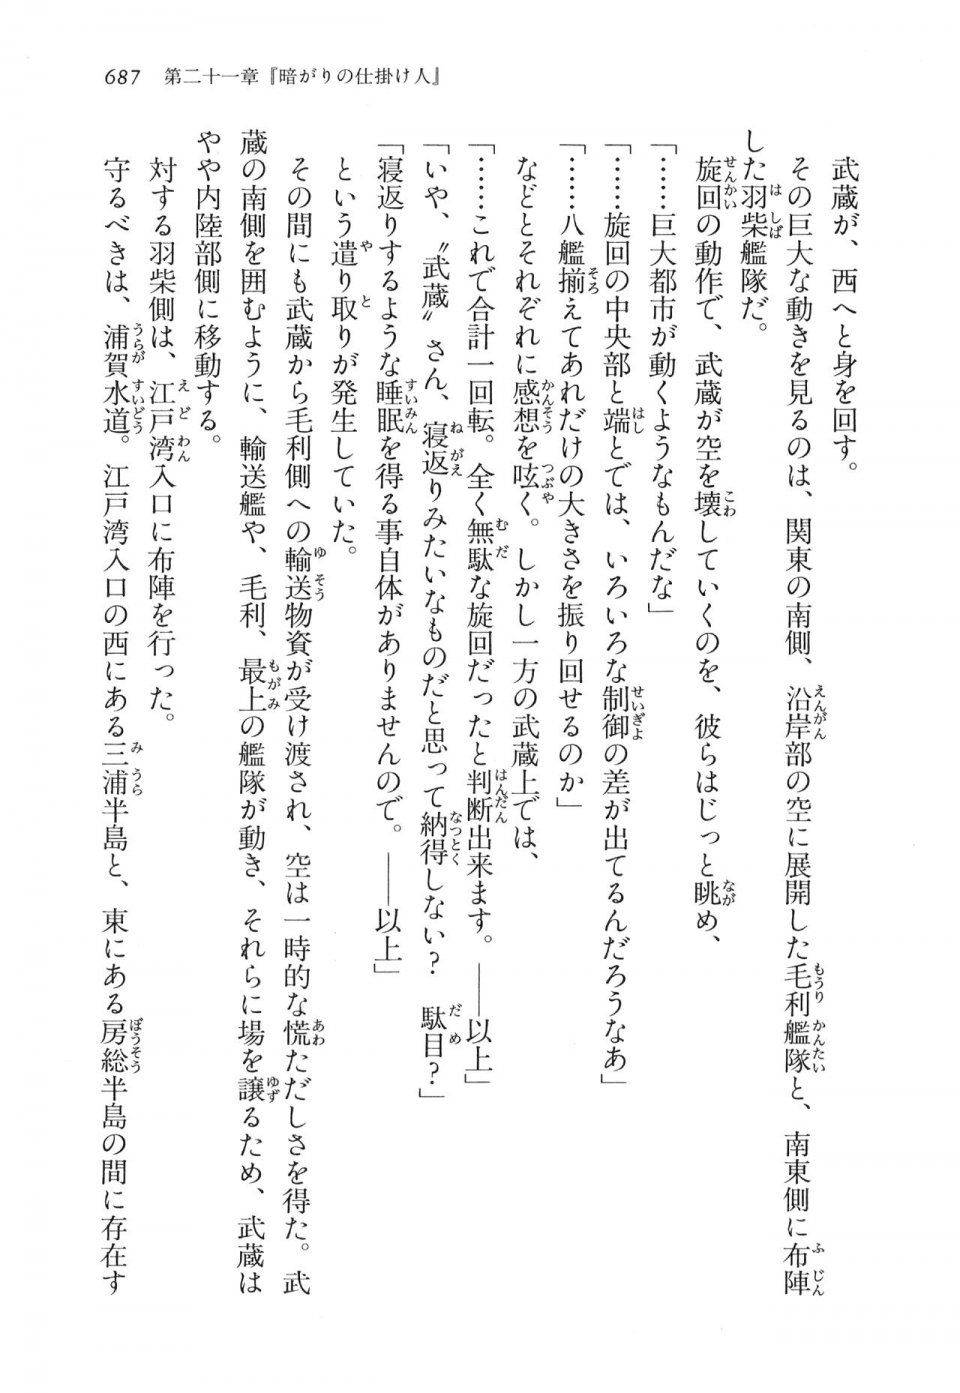 Kyoukai Senjou no Horizon LN Vol 16(7A) - Photo #687